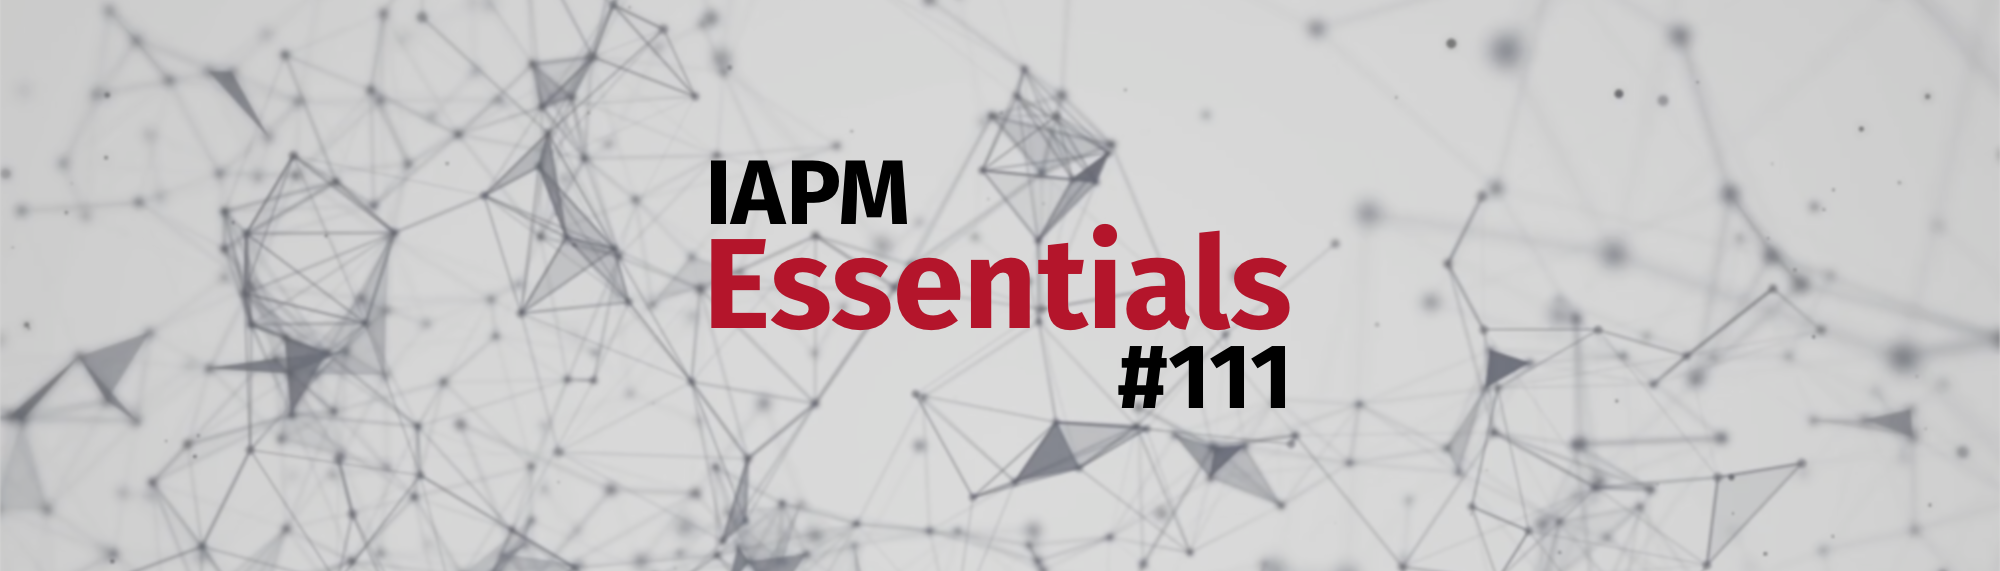 IAPM Essentials #111 - PM news | IAPM